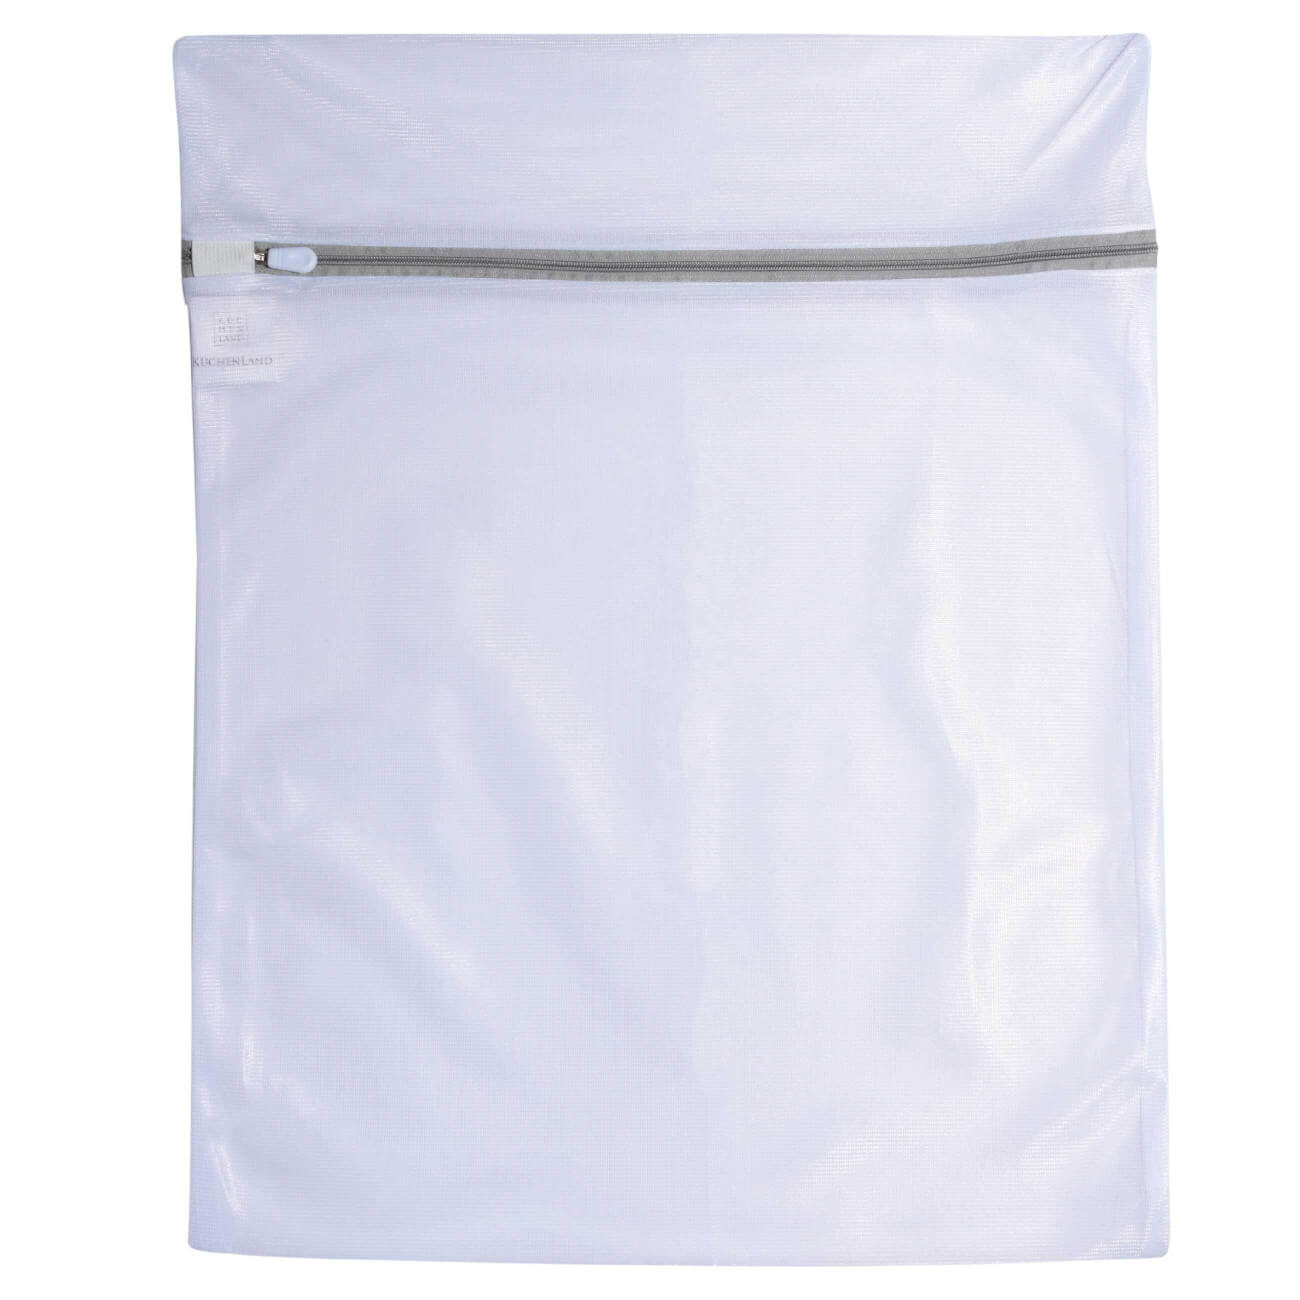 Мешок для стирки одежды, 40х50 см, полиэстер, бело-серый, Safety plus мешок для стирки бюстгалтеров 17х15 см с защитой полиэстер бело серый safety